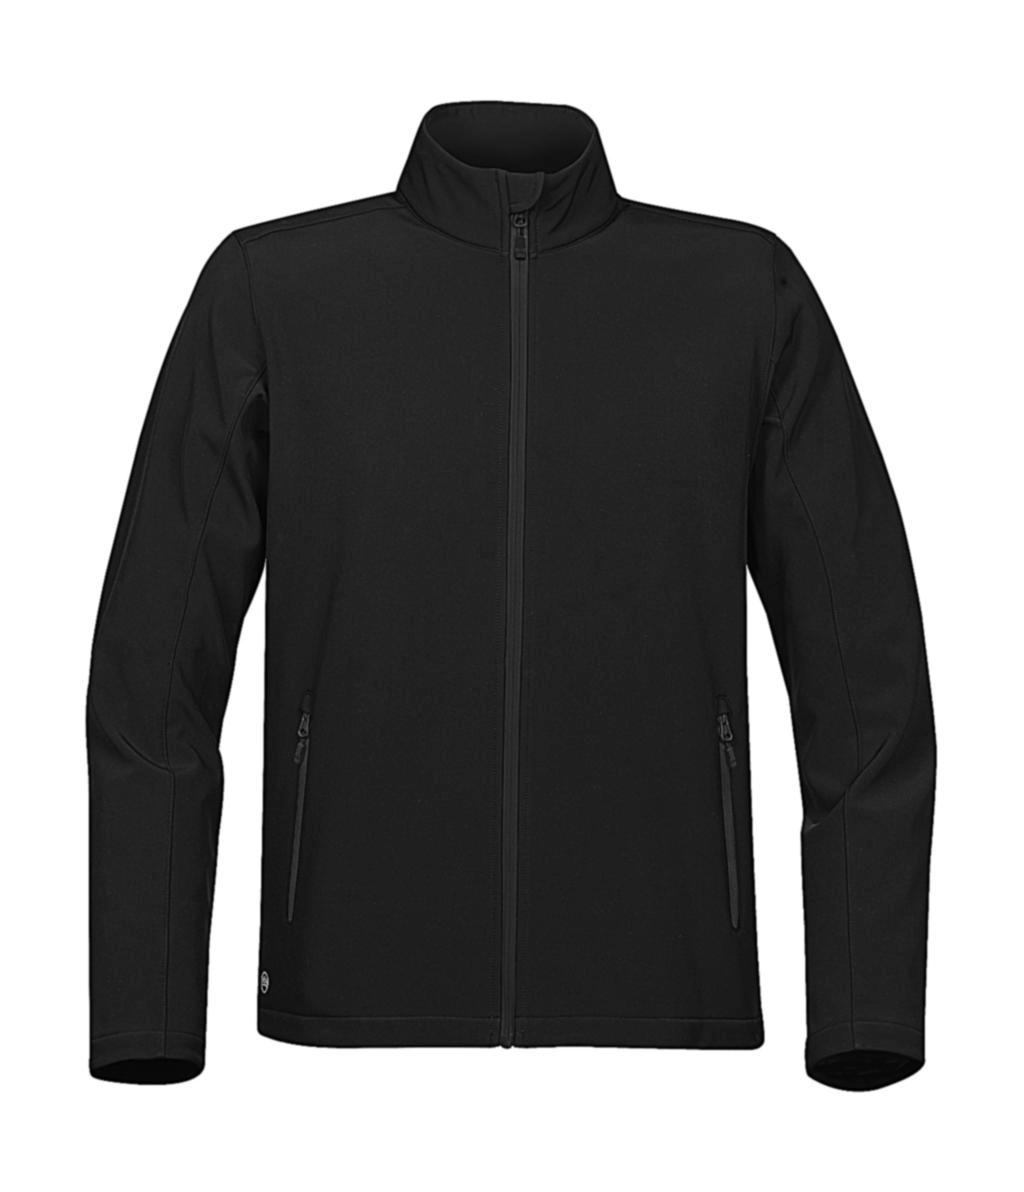 Orbiter Softshell Jacket zum Besticken und Bedrucken in der Farbe Black/Carbon mit Ihren Logo, Schriftzug oder Motiv.